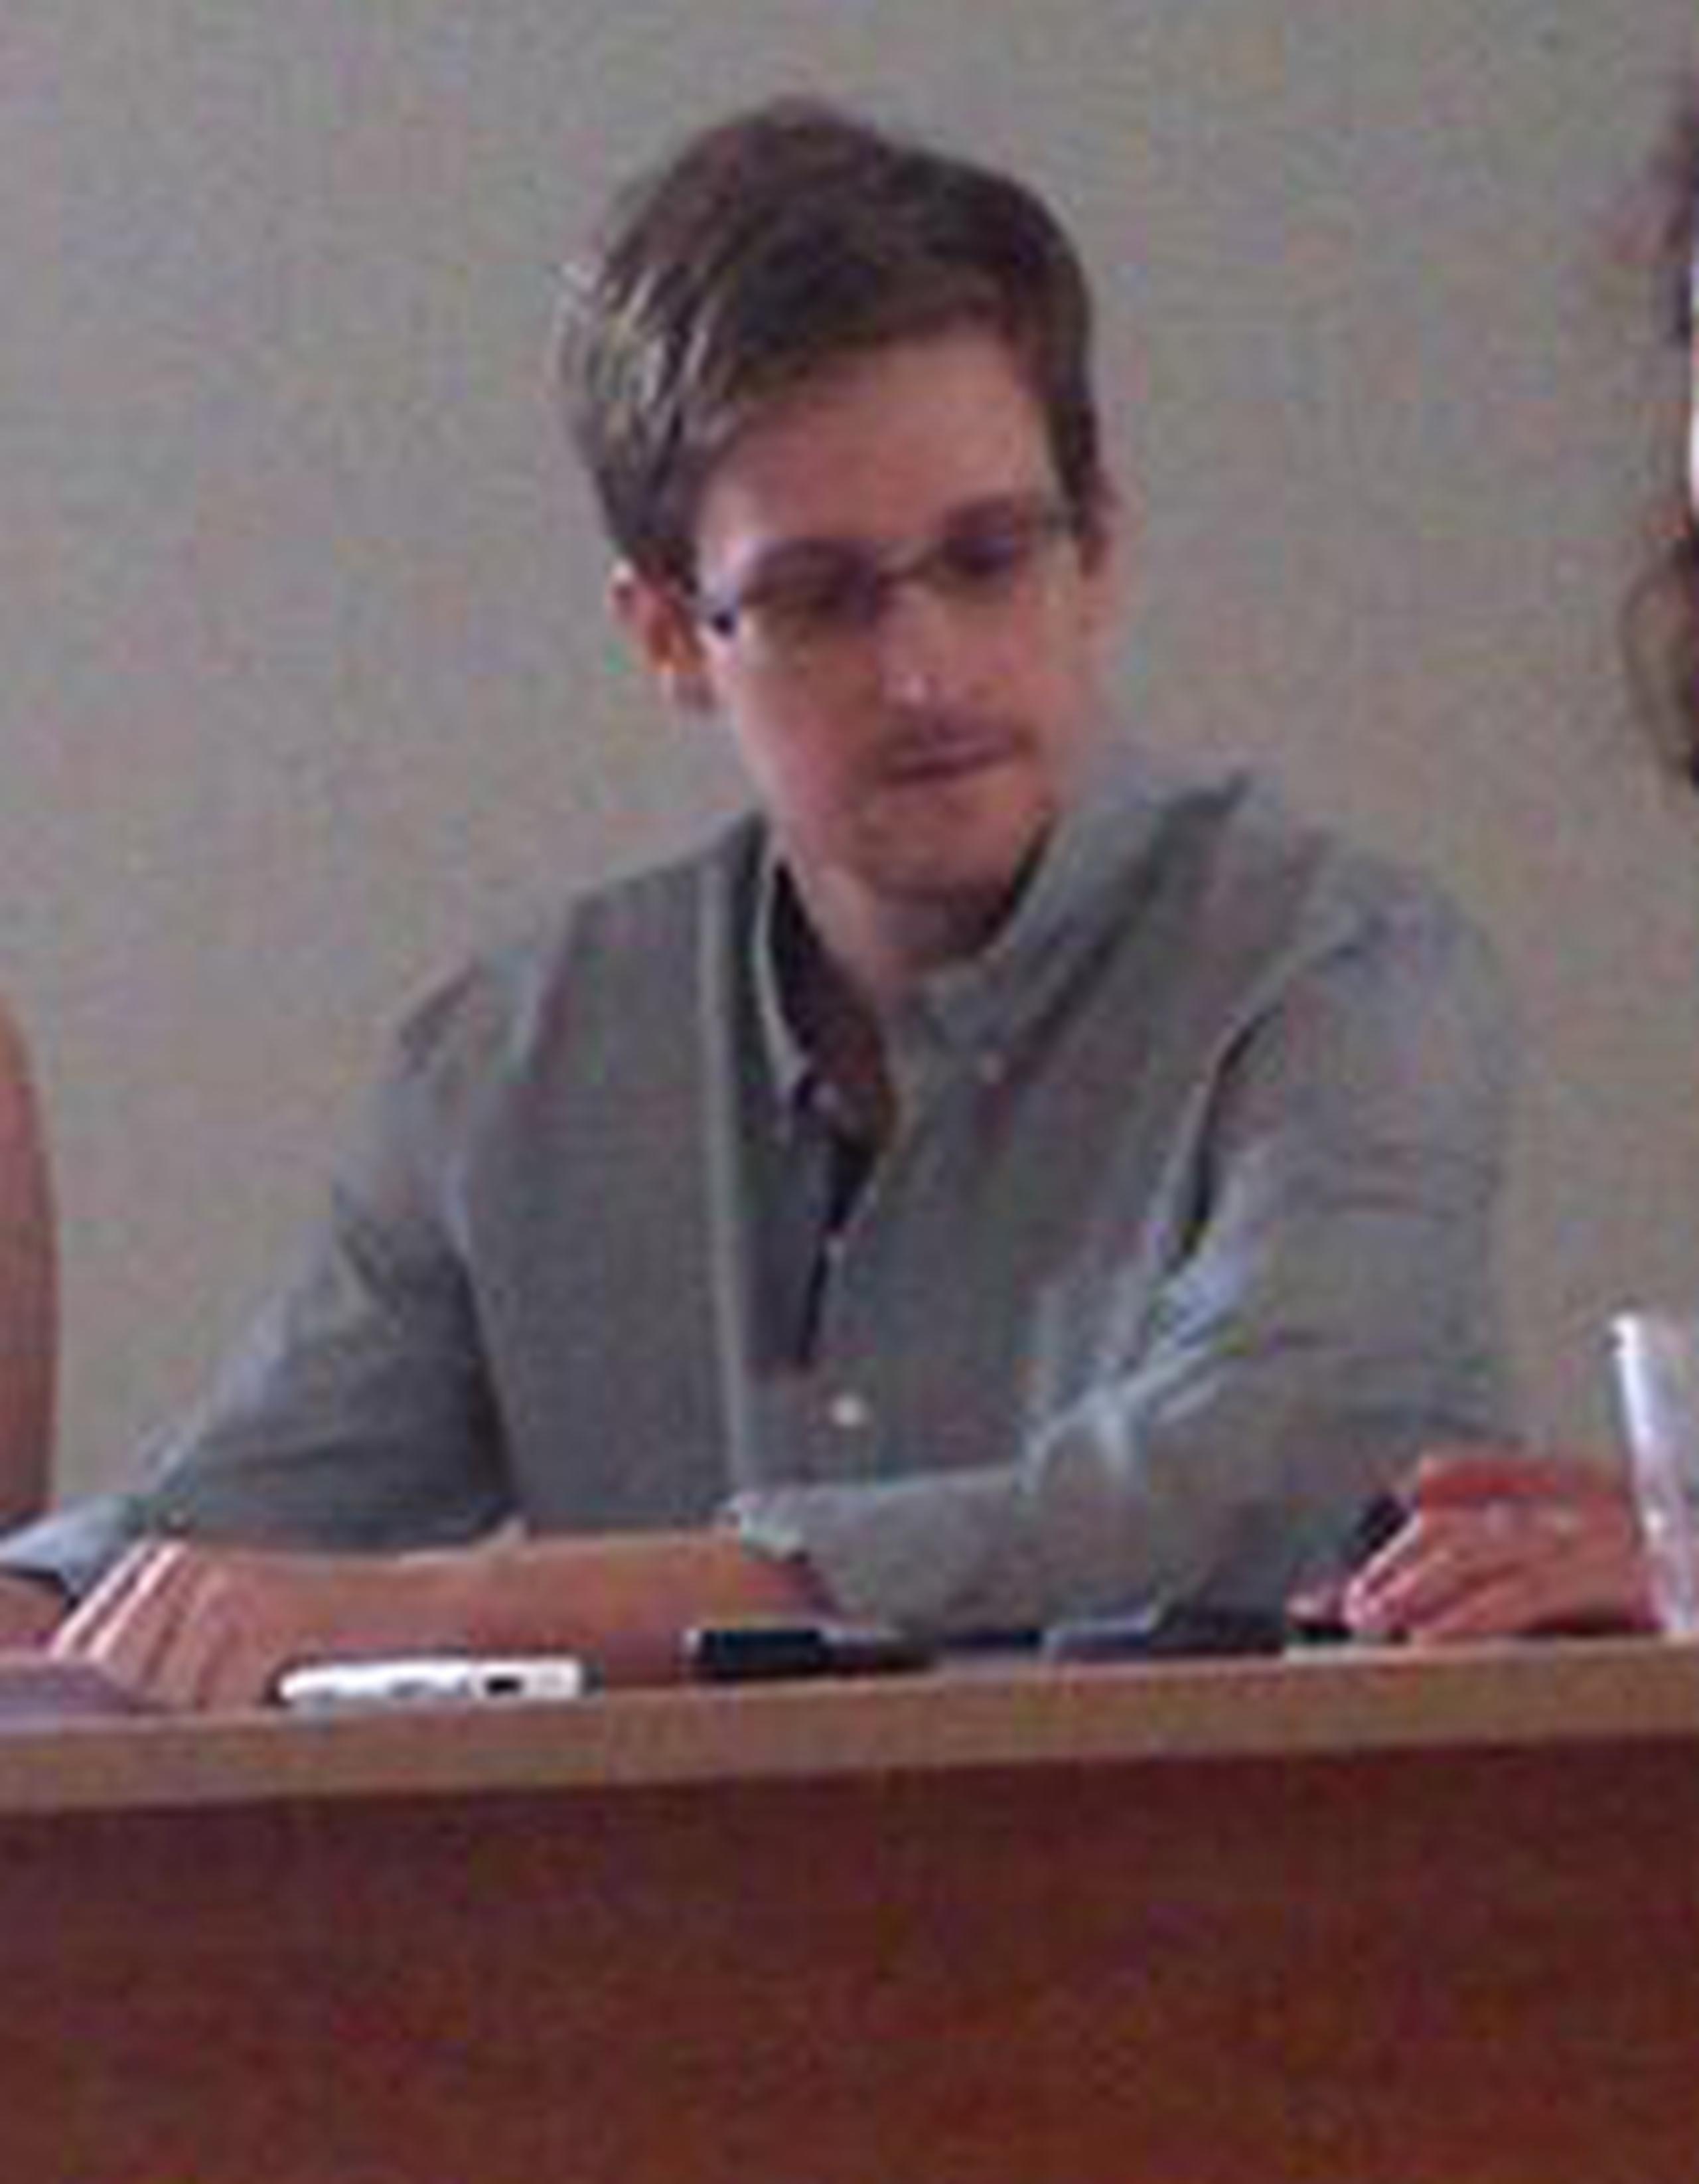 Snowden ha estado atascado allí desde que llegó en un vuelo procedente de Hong Kong el 23 de junio. (Archivo)